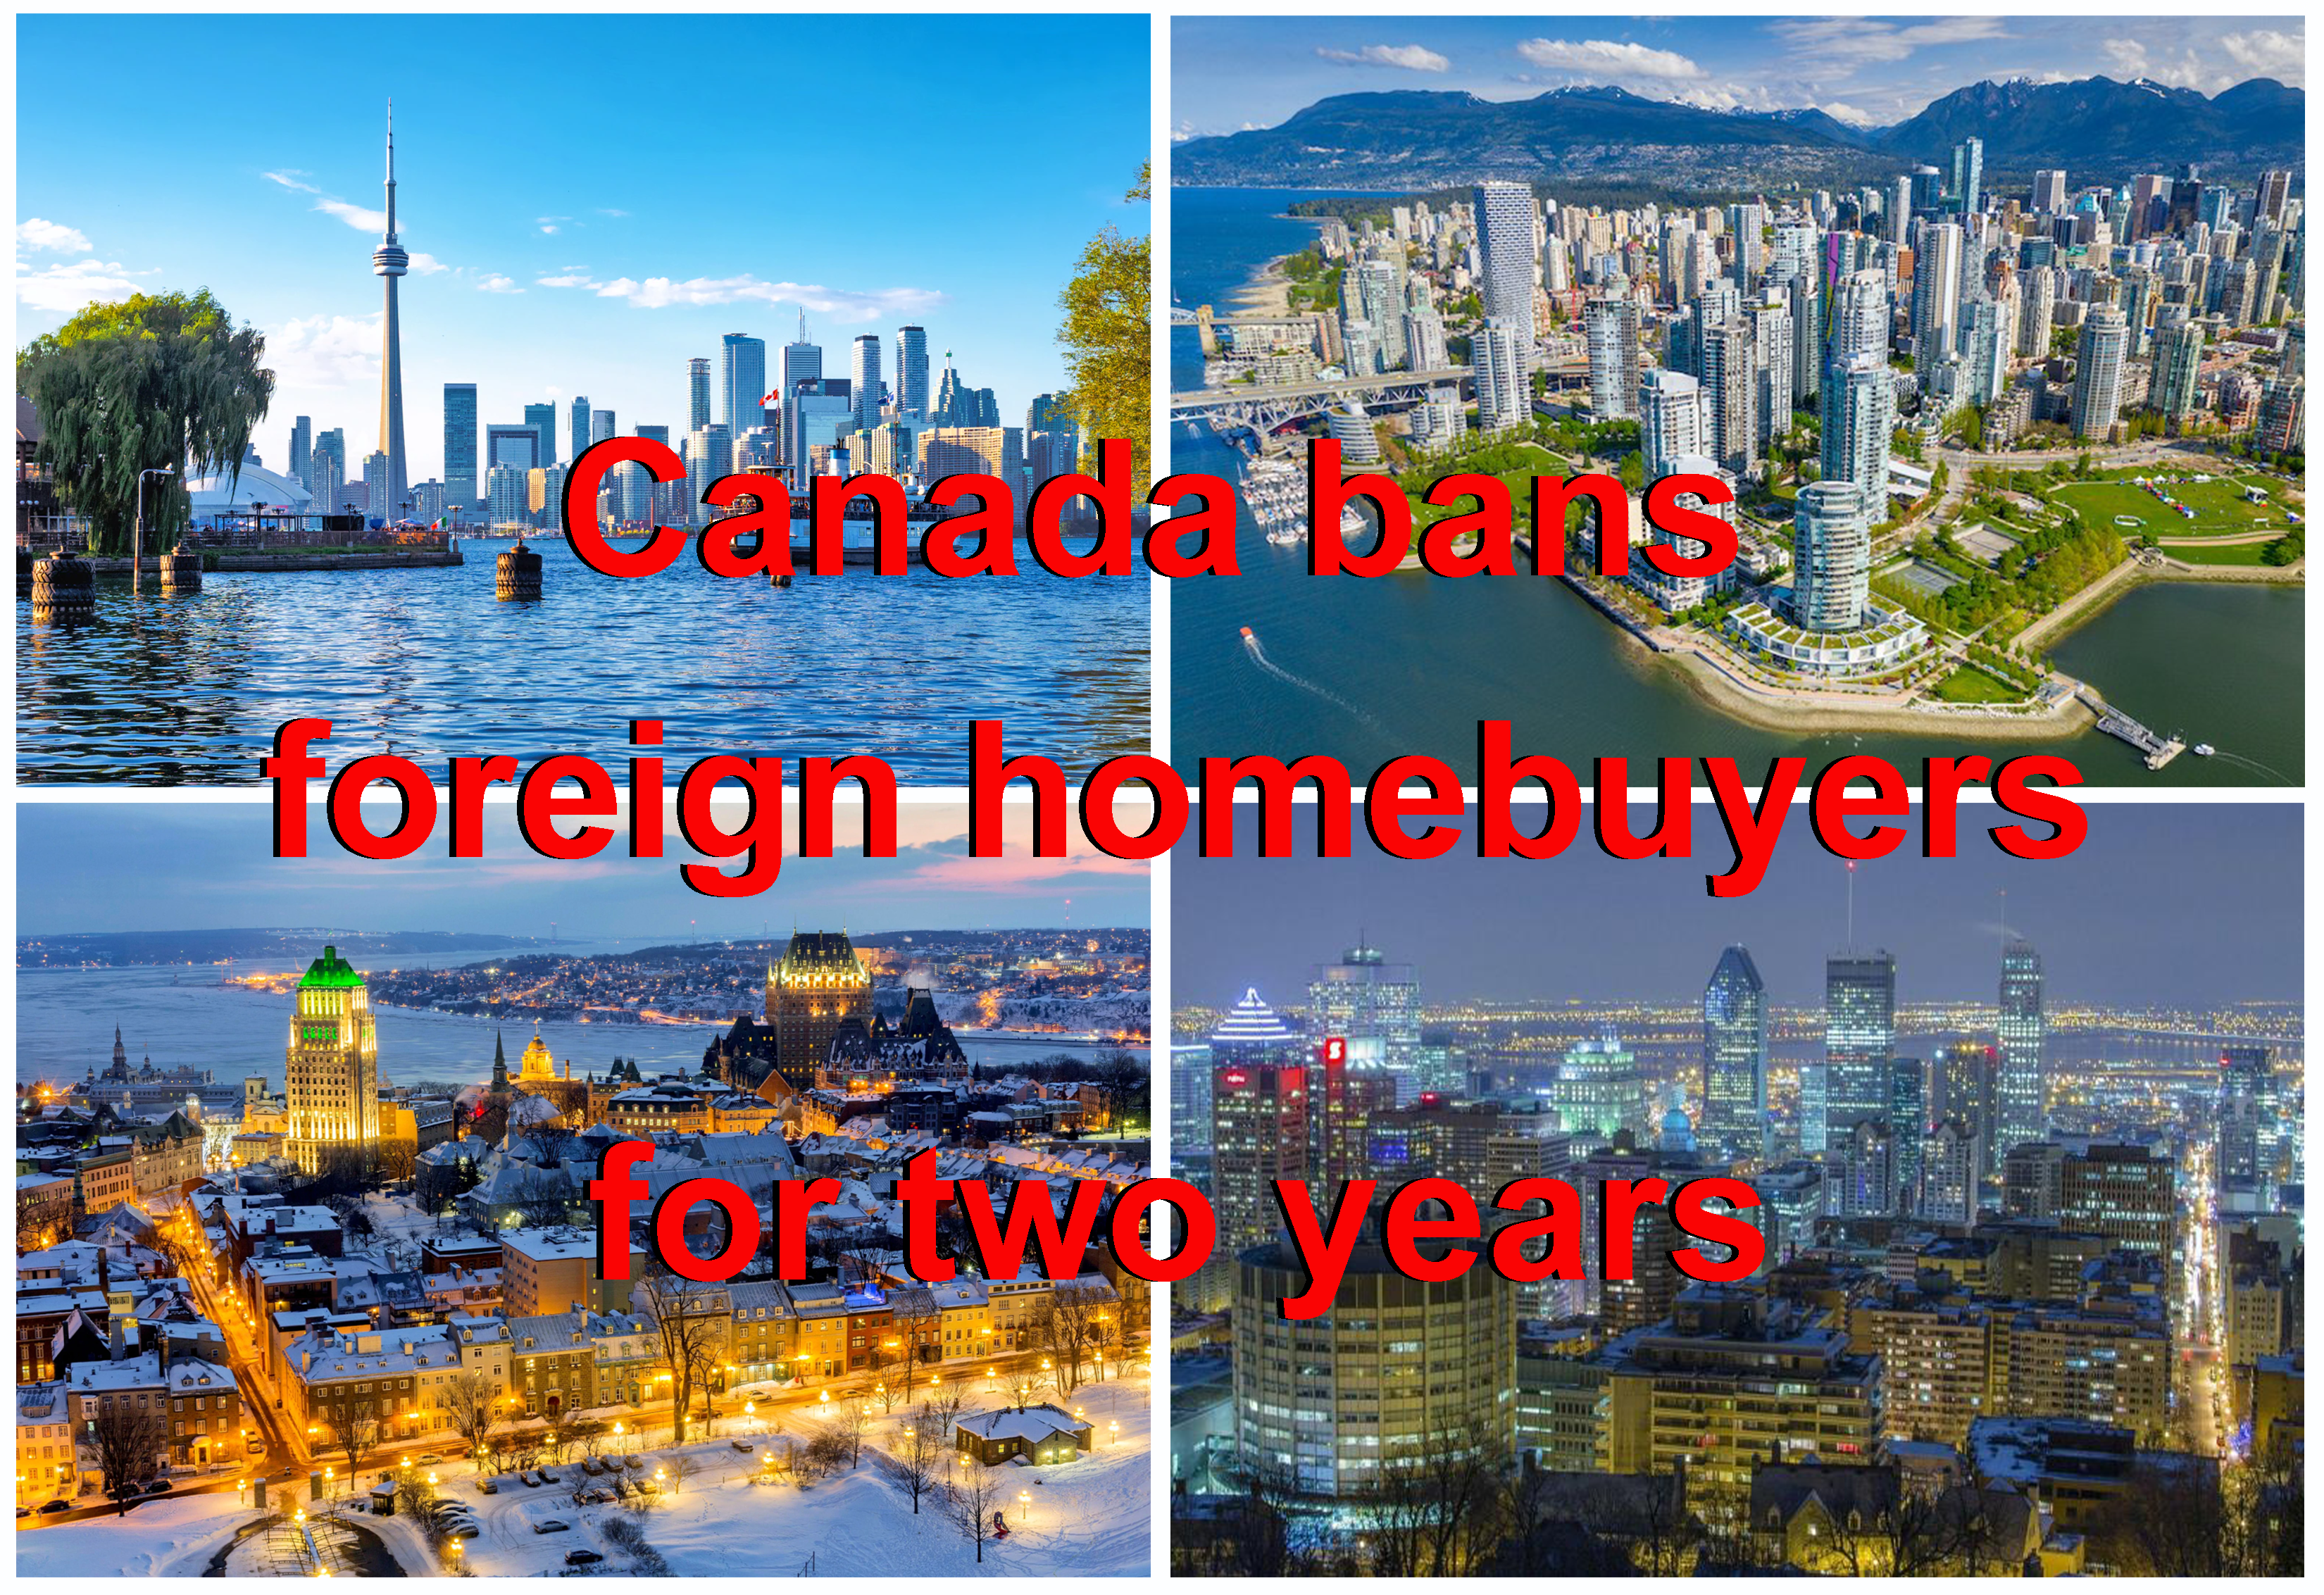 دولت کانادا خرید خانه برای خارجی های غیرمقیم را در تلاش برای آرام کردن بازار مسکن به مدت دو سال ممنوع می کند